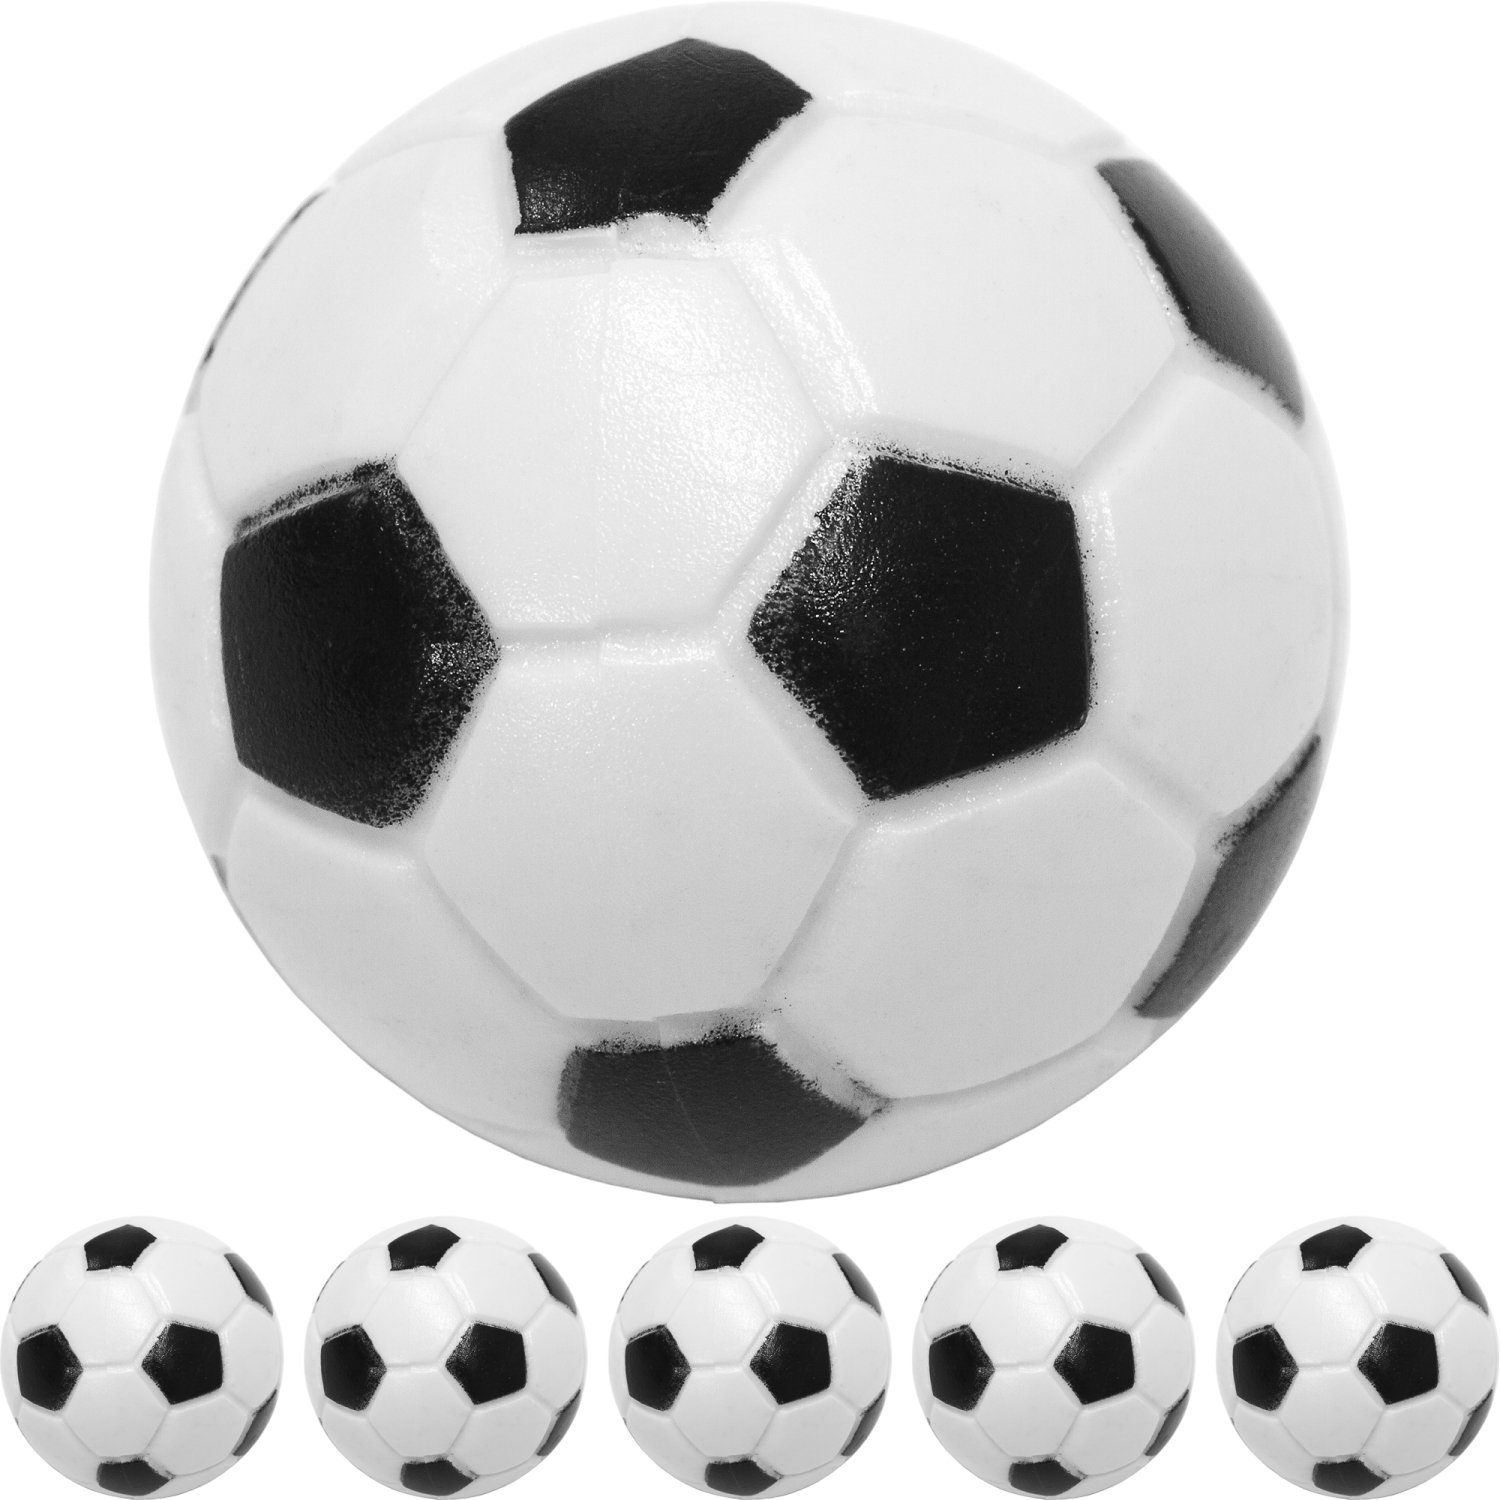 PLANET Bälle, schnell, 31mm, Kickerbälle oder 5er 5 Planet Fußball-Optik), Tischfussball Kicker (Klassische 10 und Stück Durchmesser GAMES Pack), Ball schwarz/weiß hart Spielball (Set, Farbe: Games